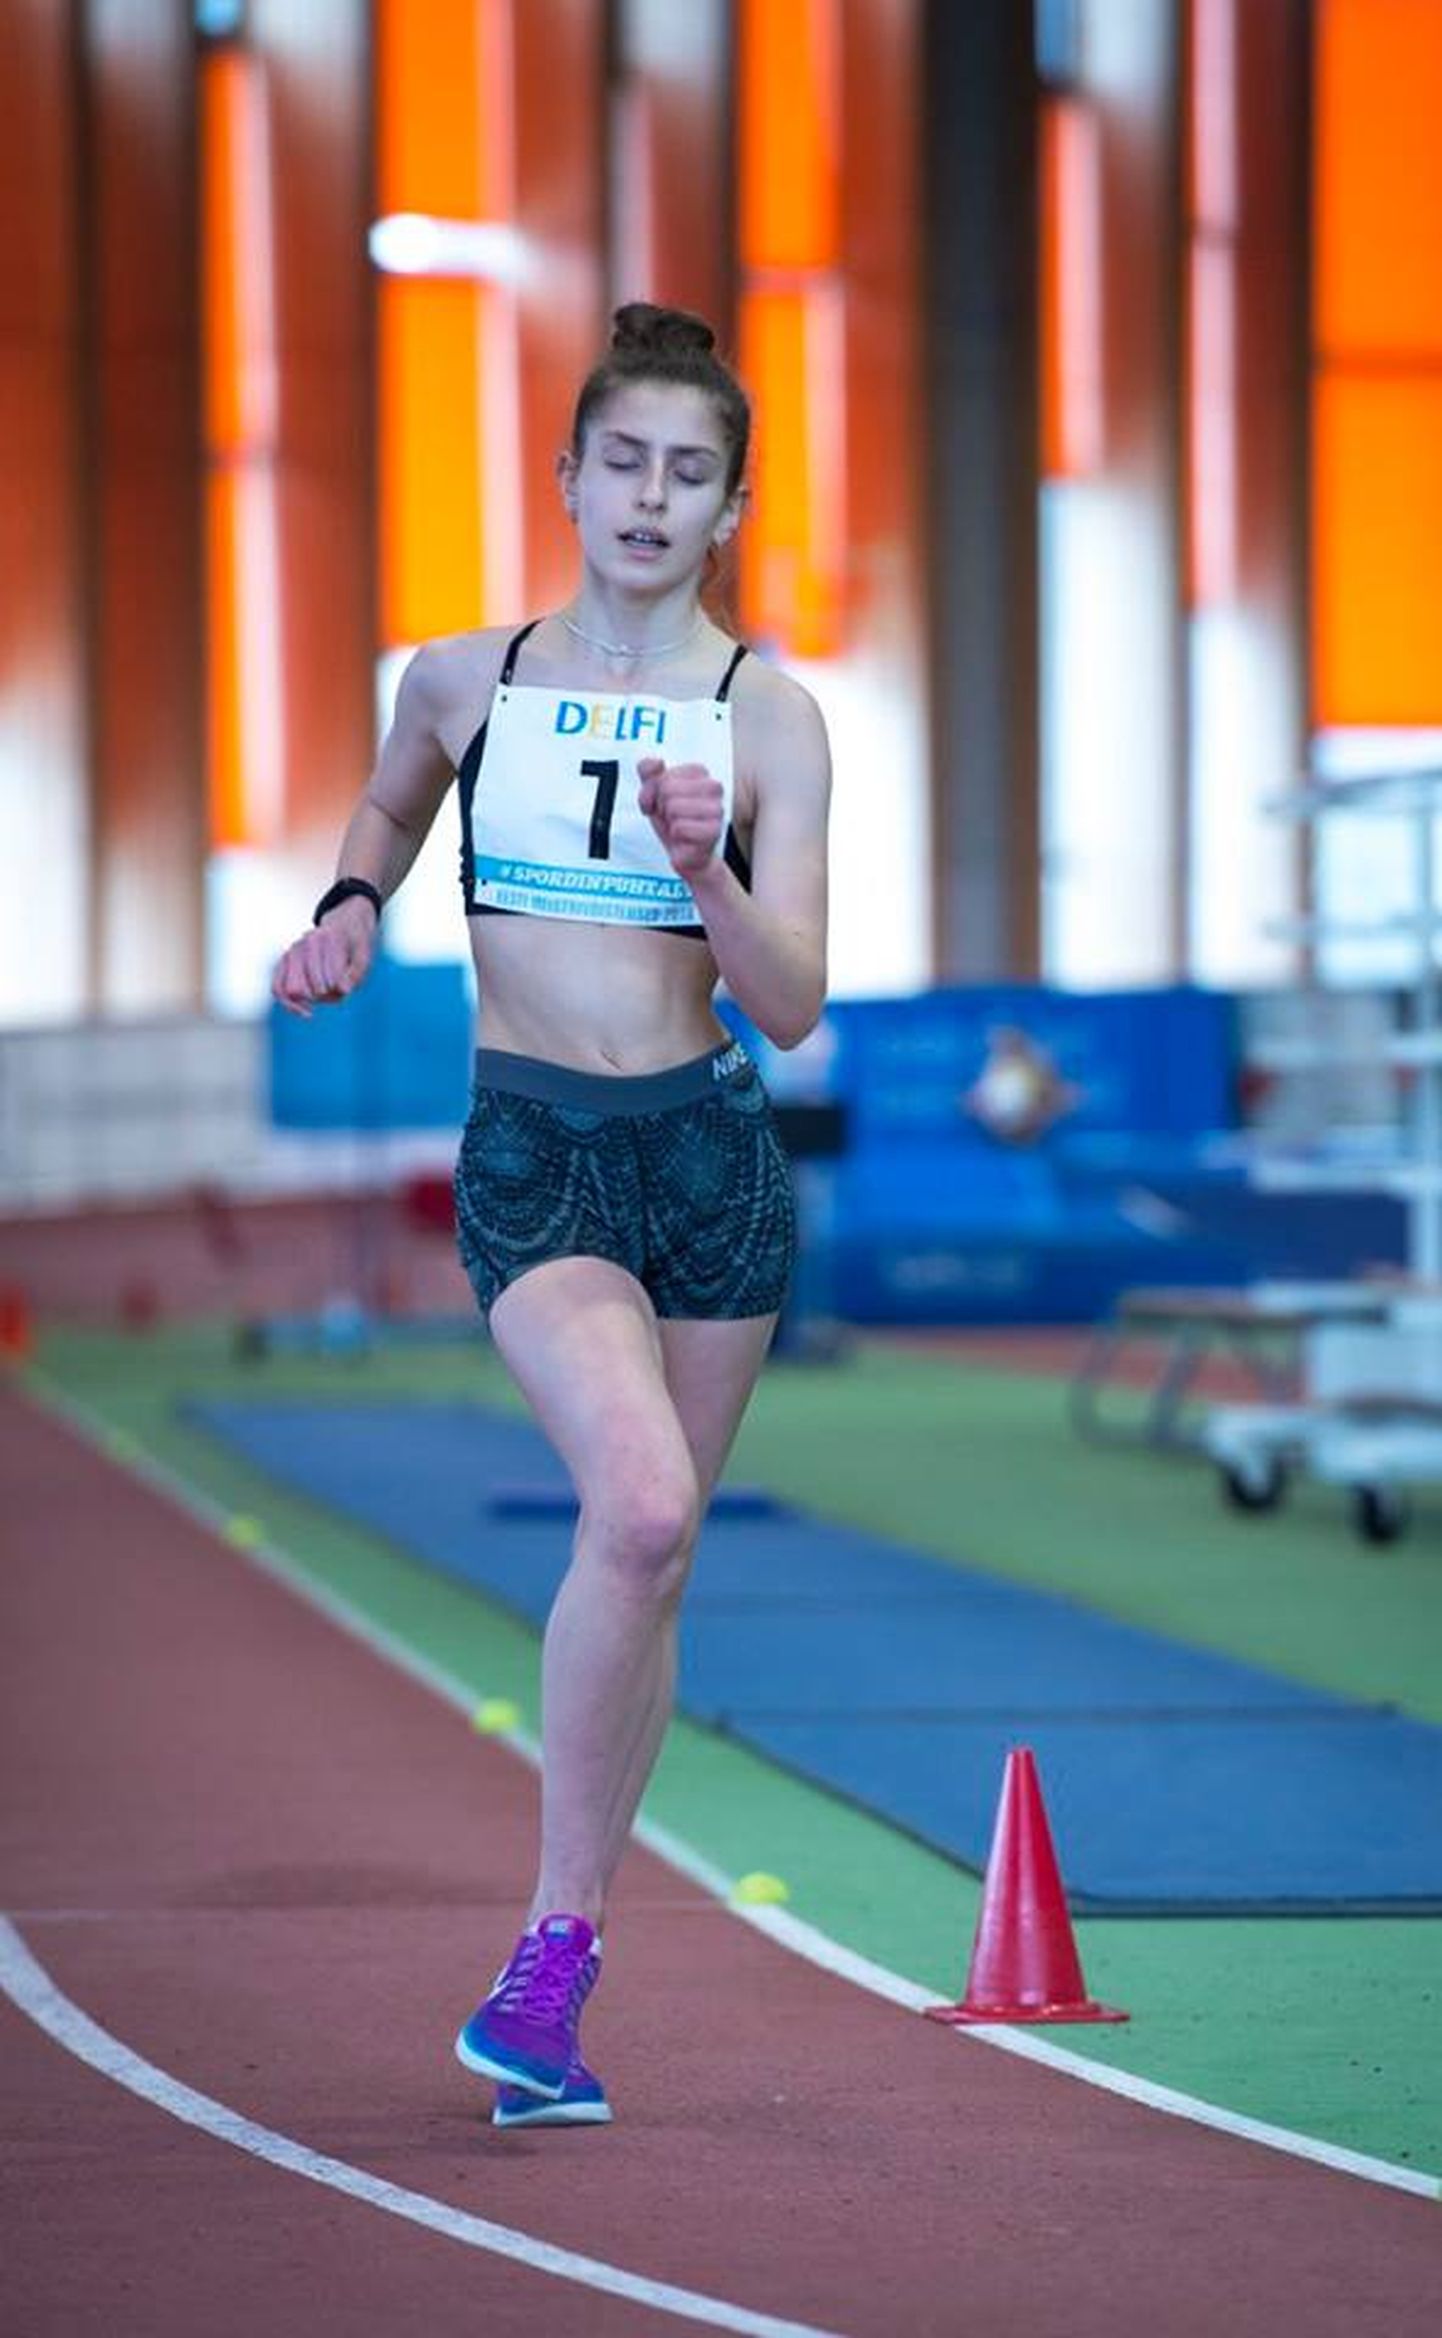 Pühapäeval toimunud Eesti meistrivõistlustel võitis 15aastane Jekaterina Mirotvortseva naiste 3000 meetri käimises kindla esikoha. 
MARKO MUMM/kergejõustikuliit